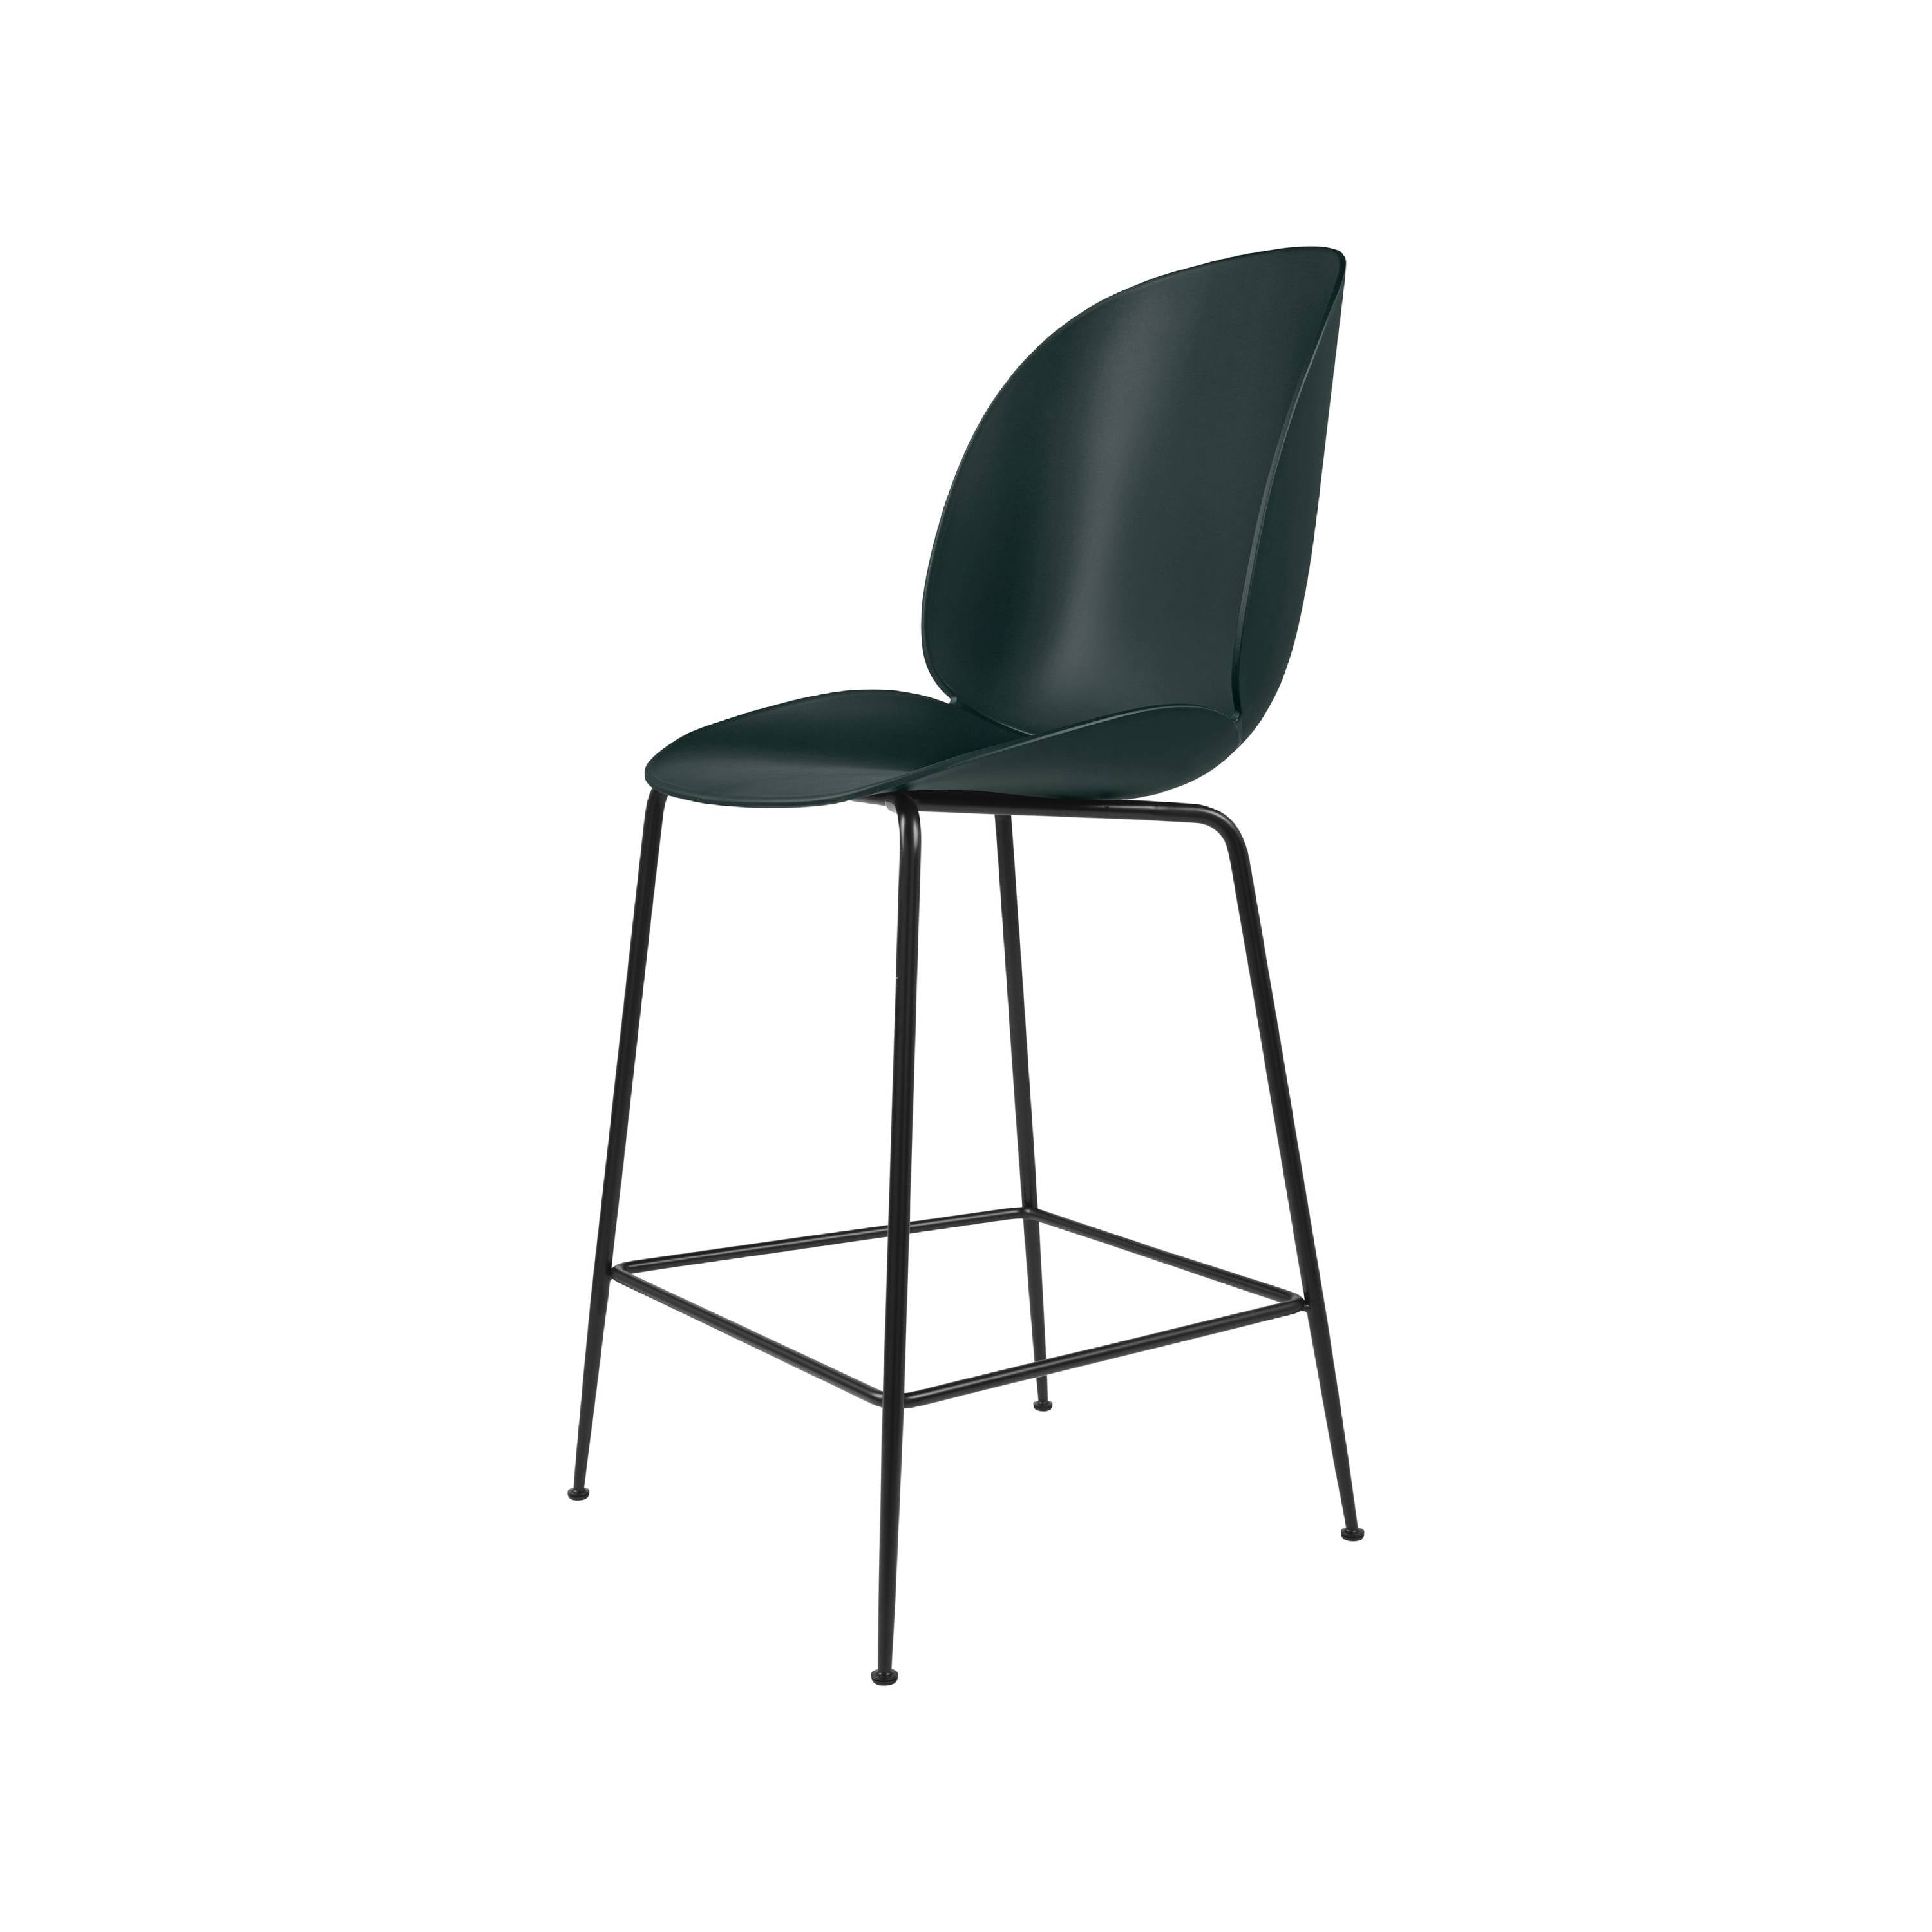 Beetle Bar + Counter Chair: Counter + Dark Green + Black Matt